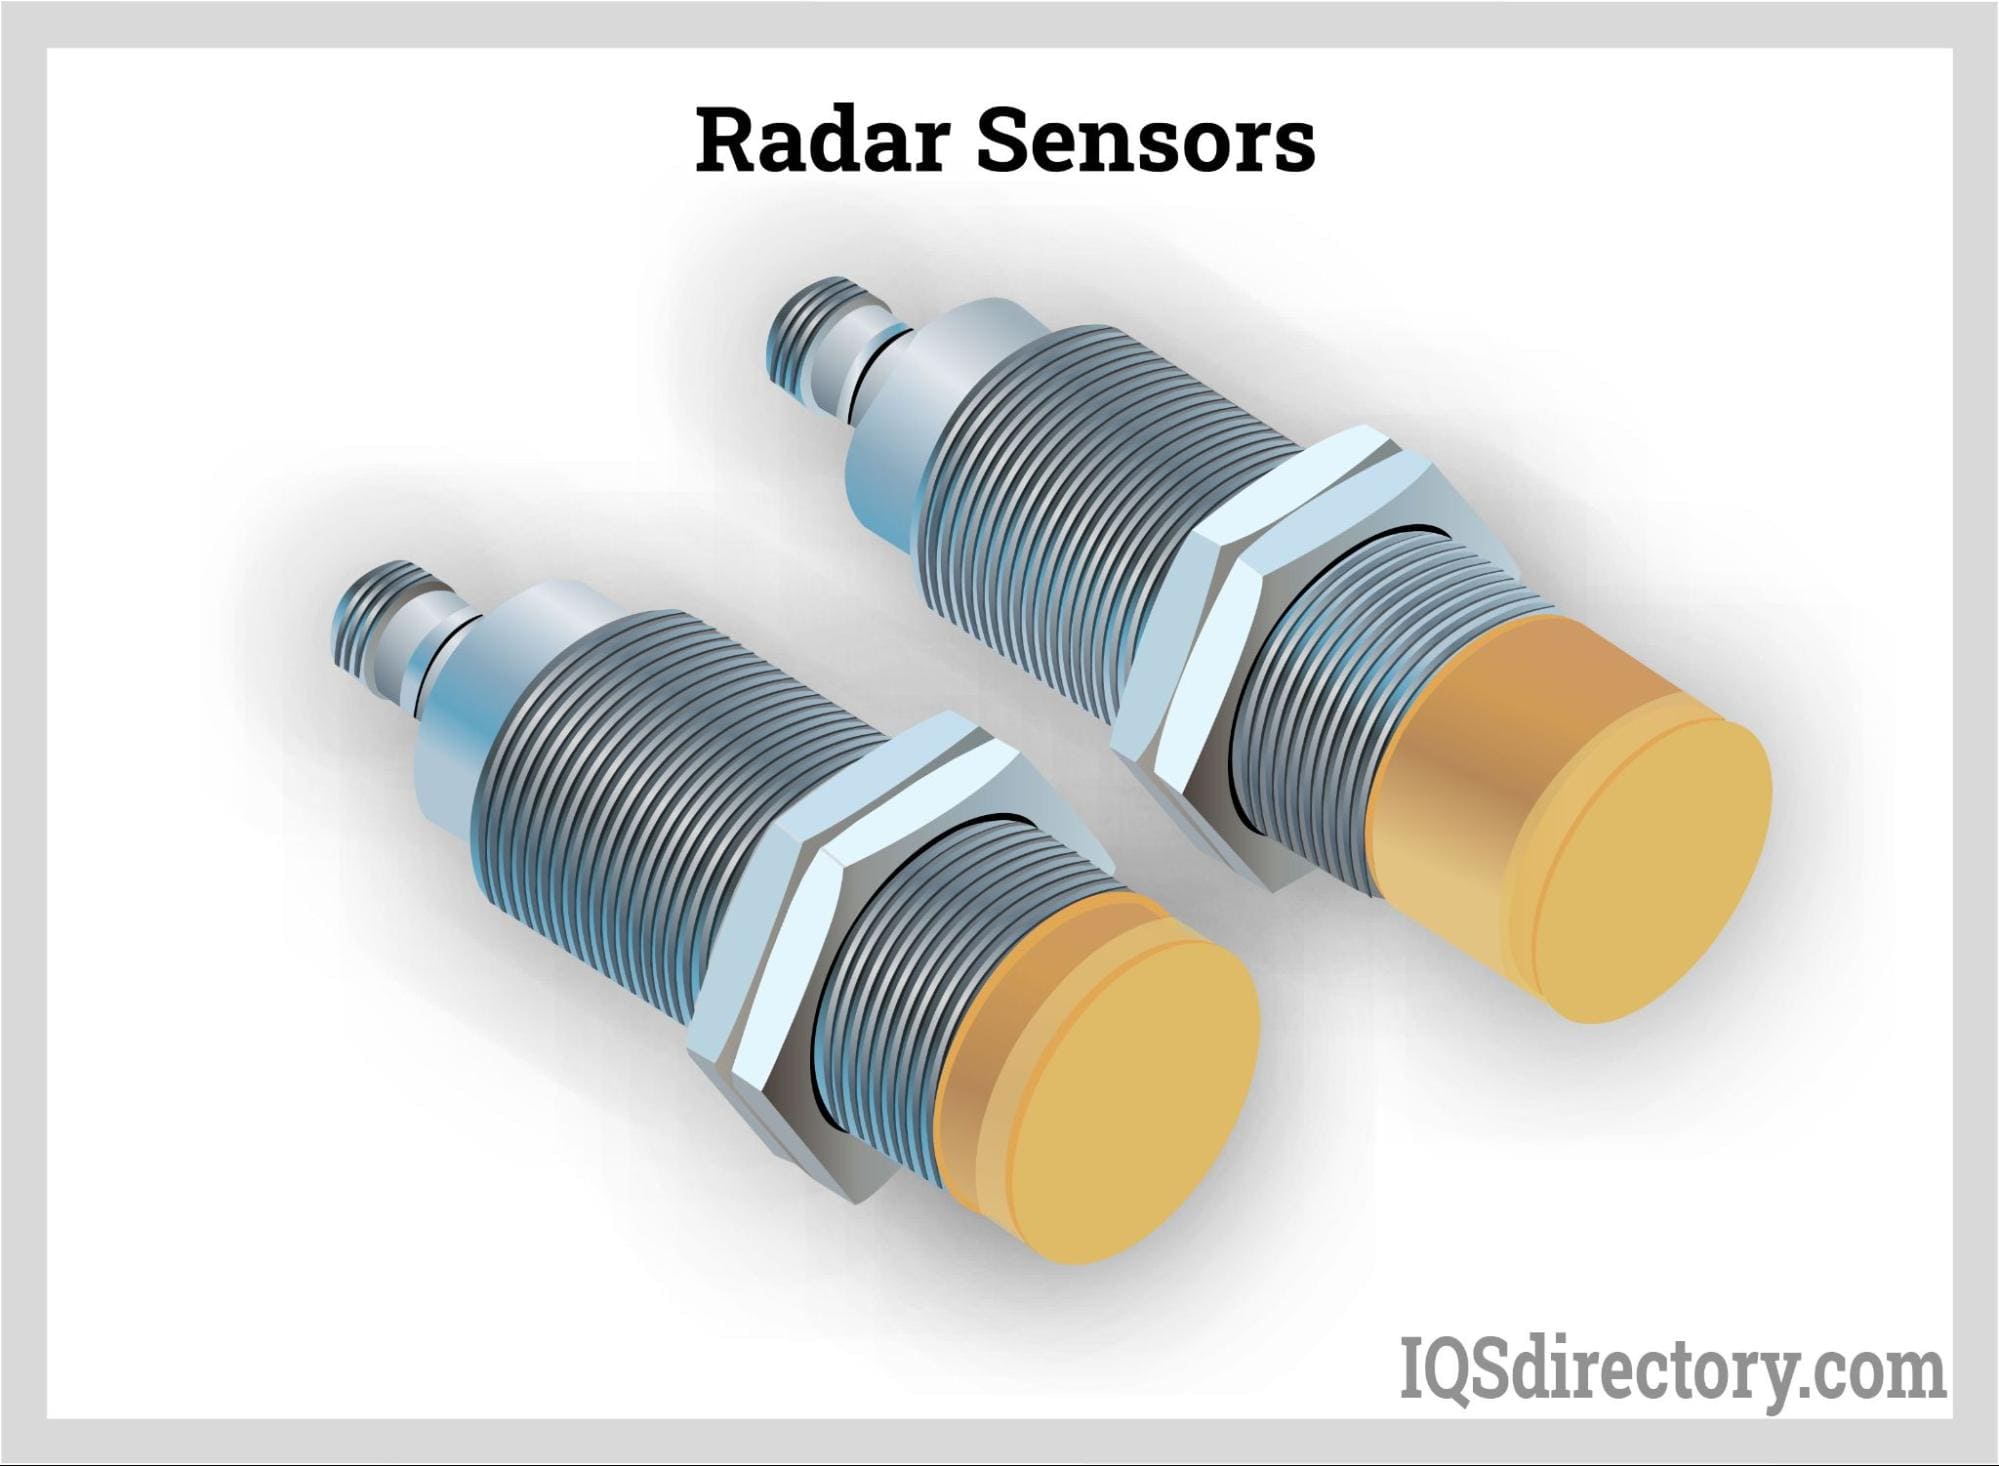 Radar Sensors